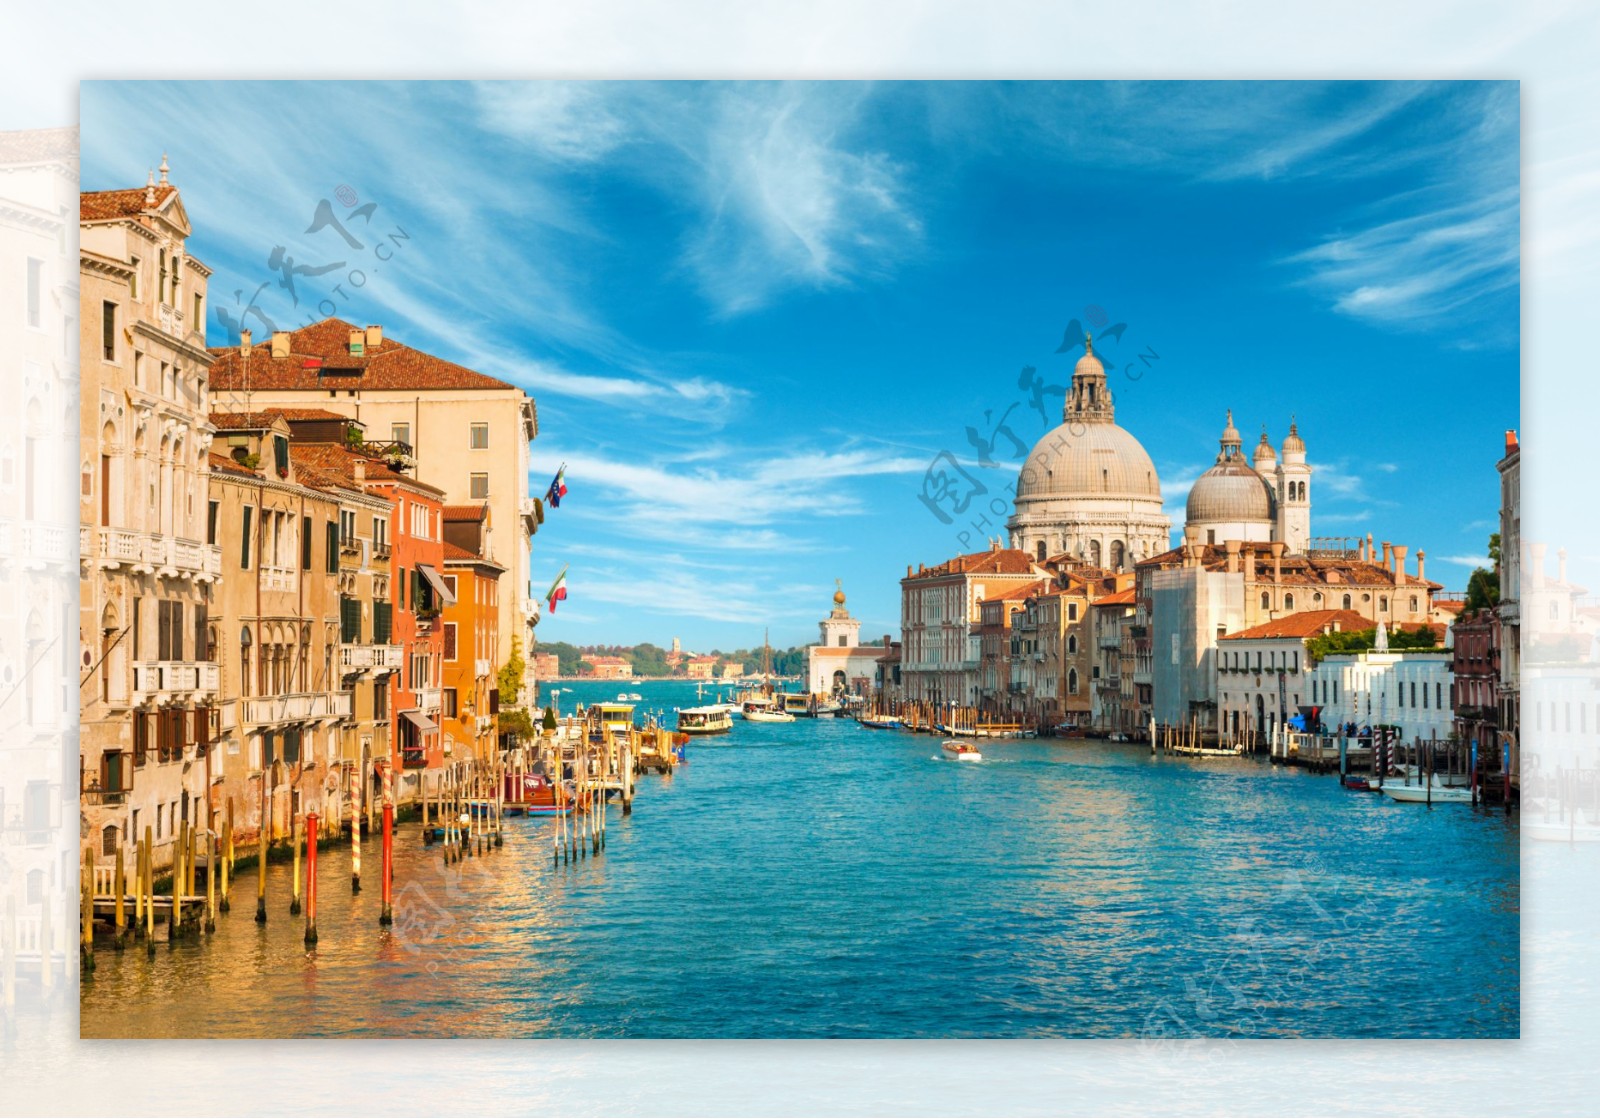 威尼斯水城意大利图片